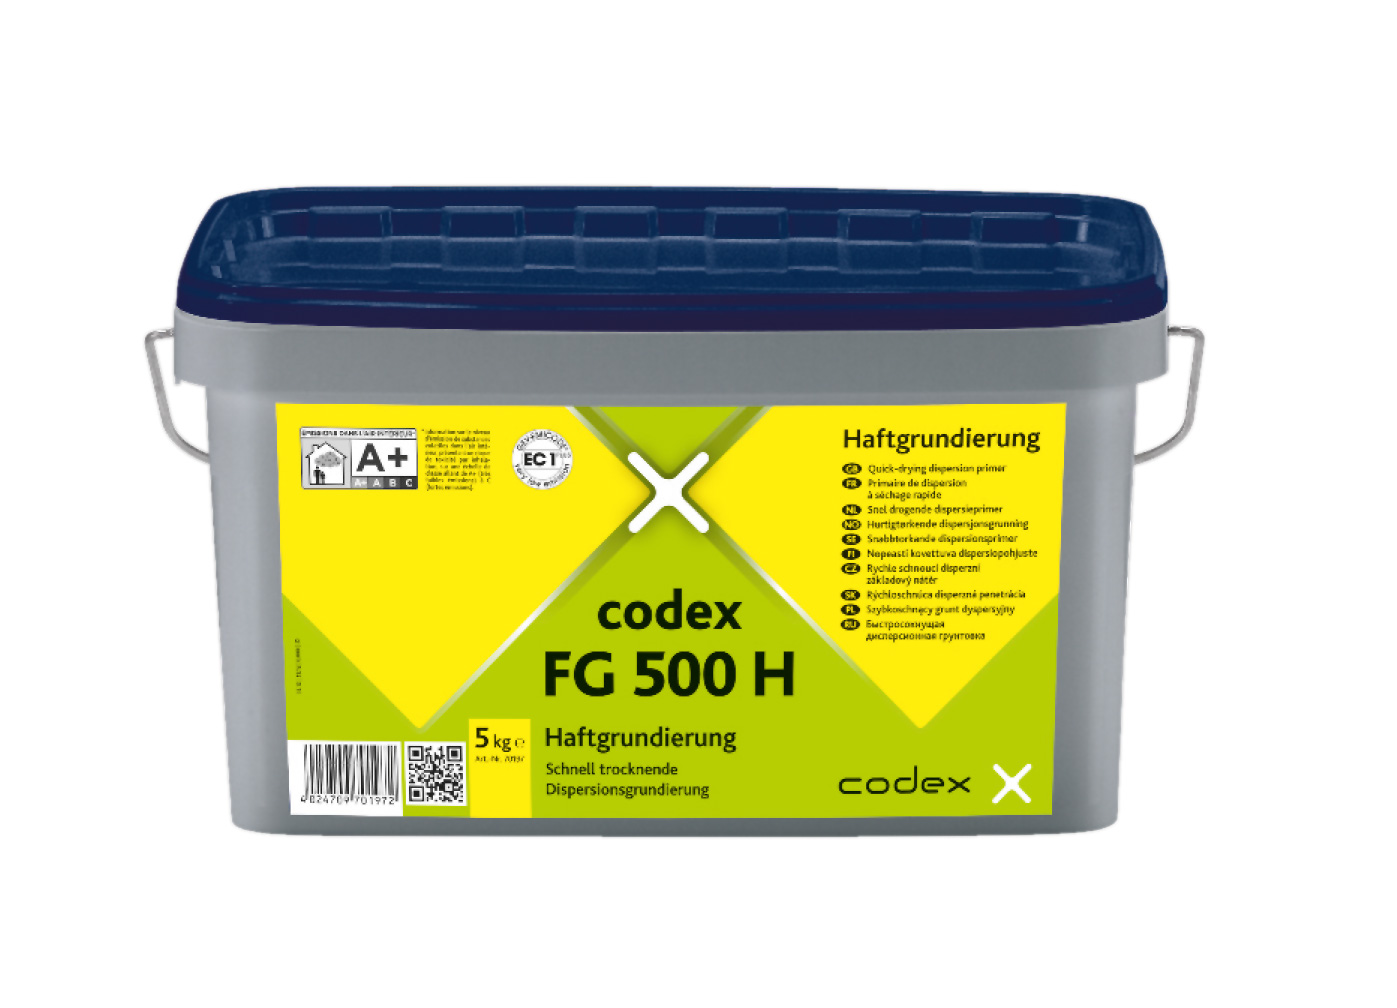 codex FG 500 H Haftgrundierung - 5kg